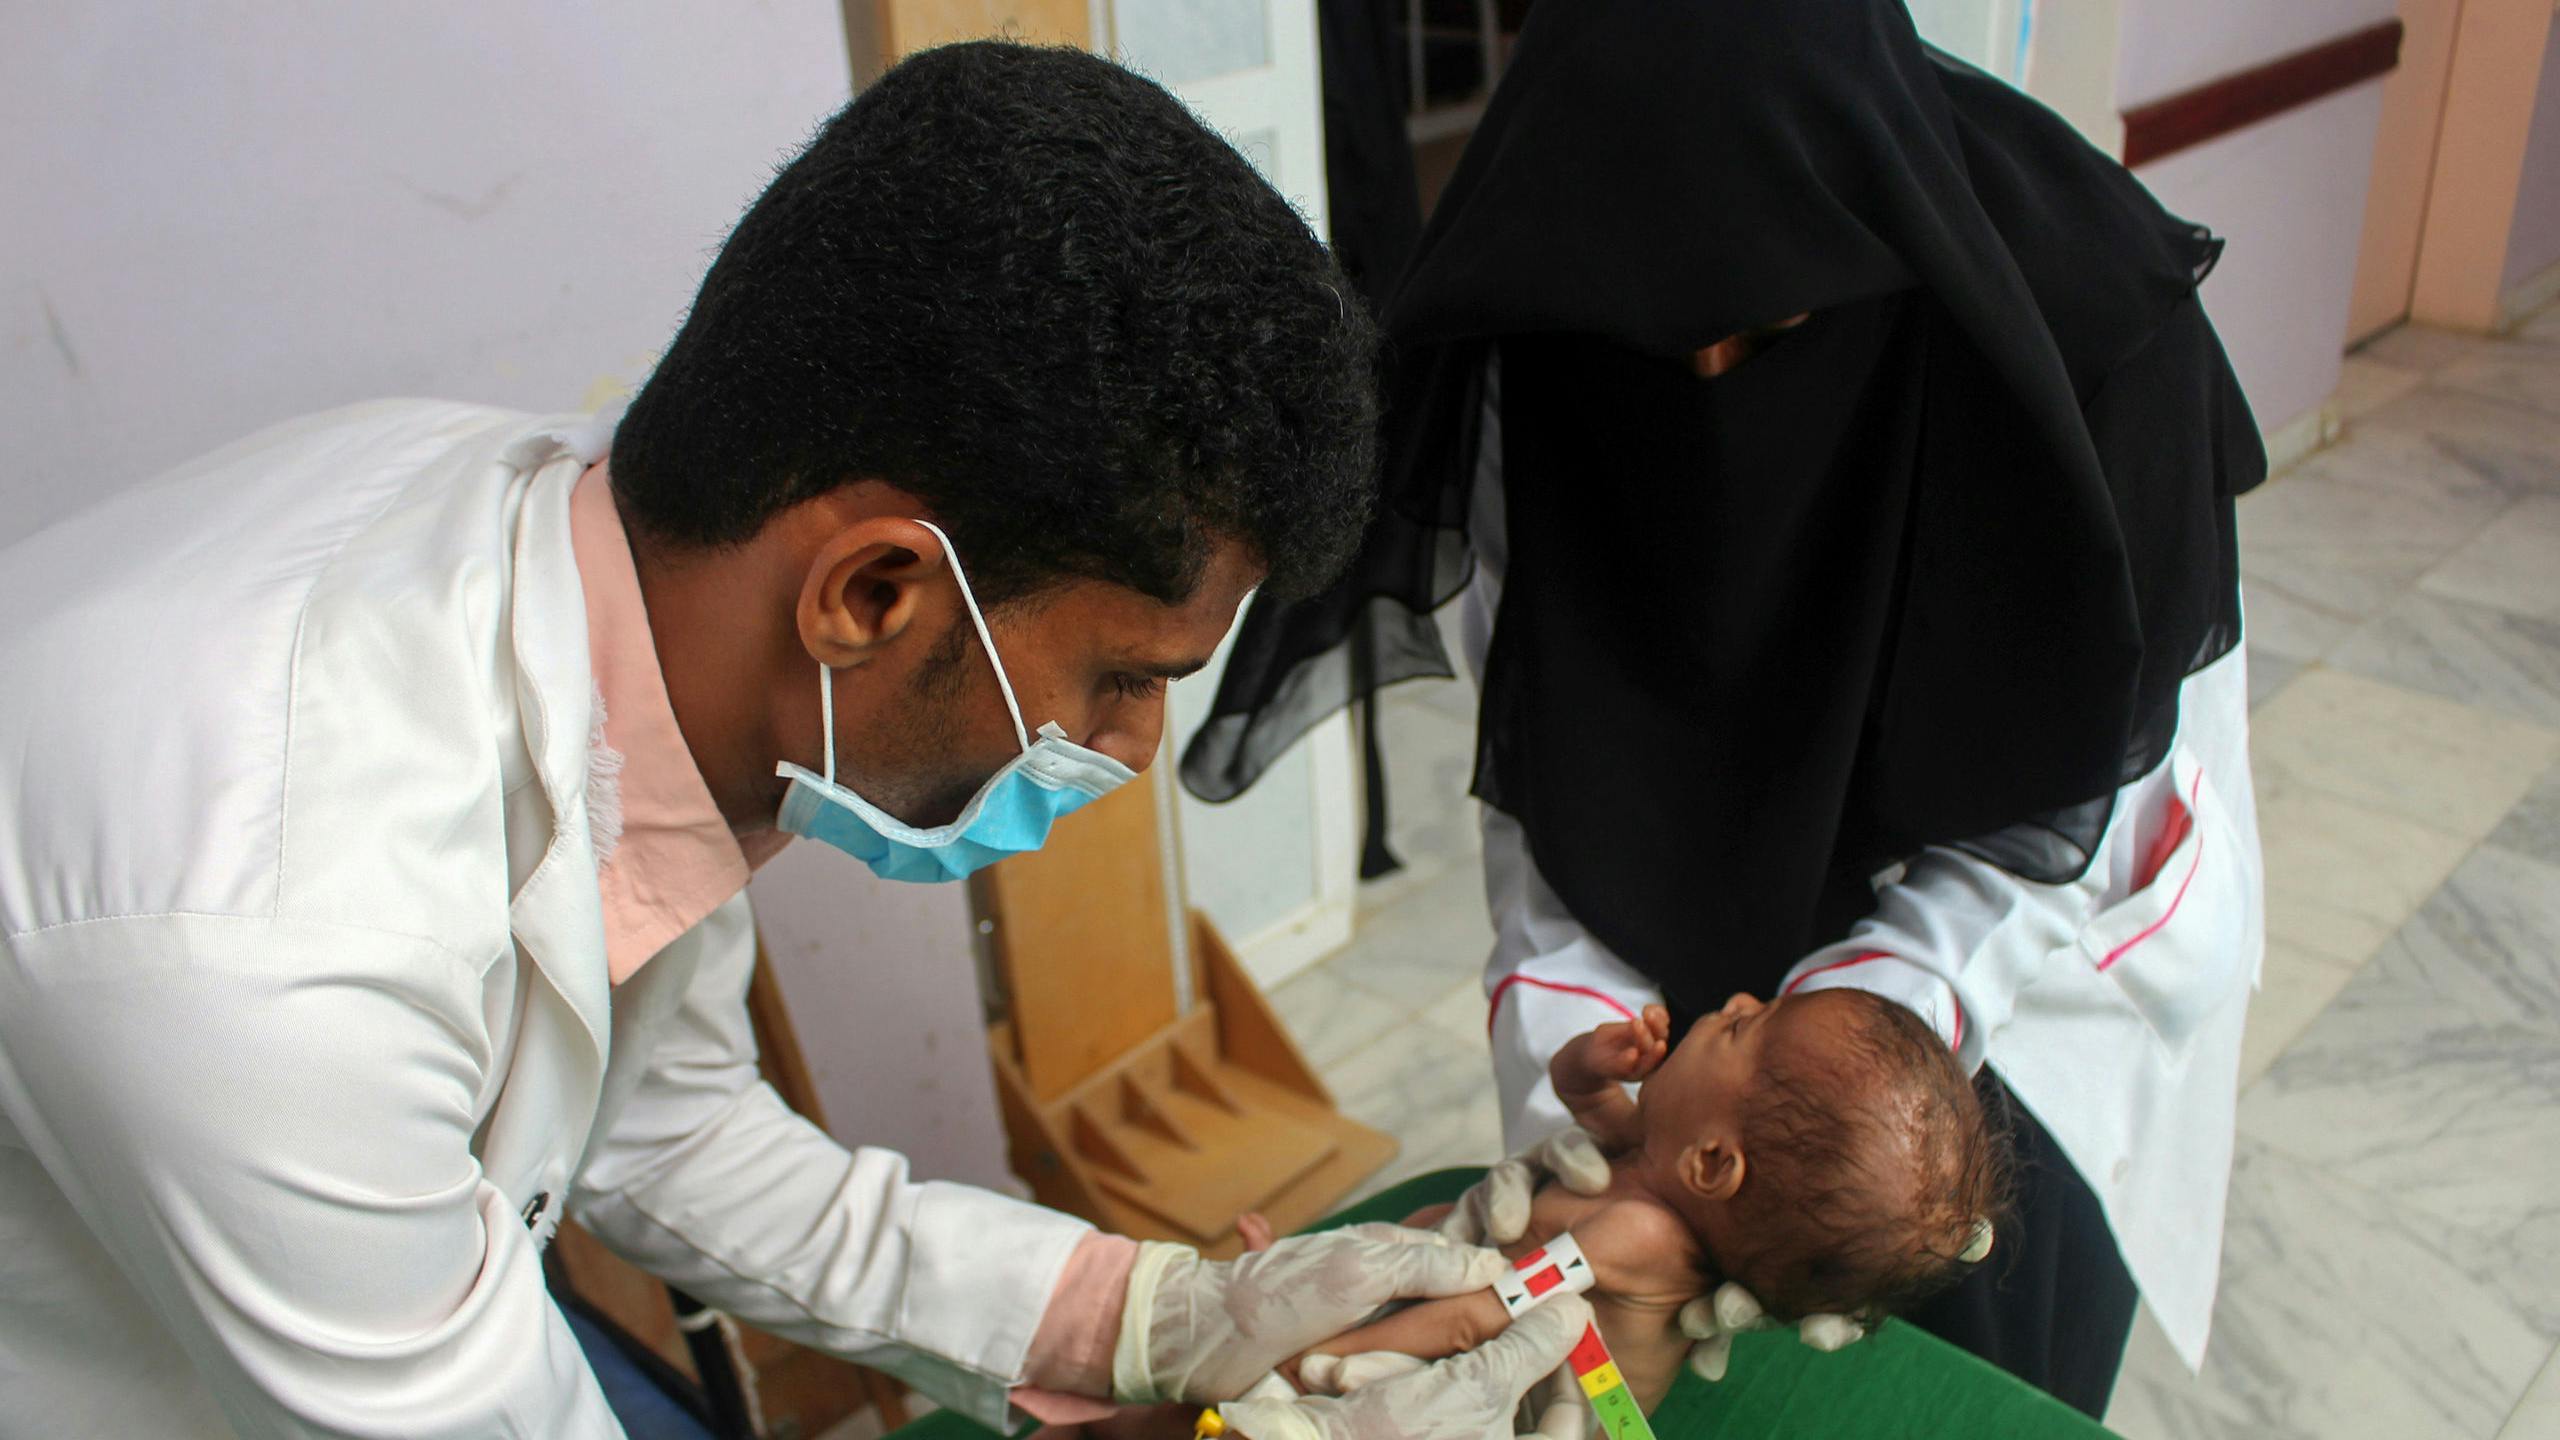 Een ondervoed kind uit Jemen wordt onderzocht door medisch personeel.